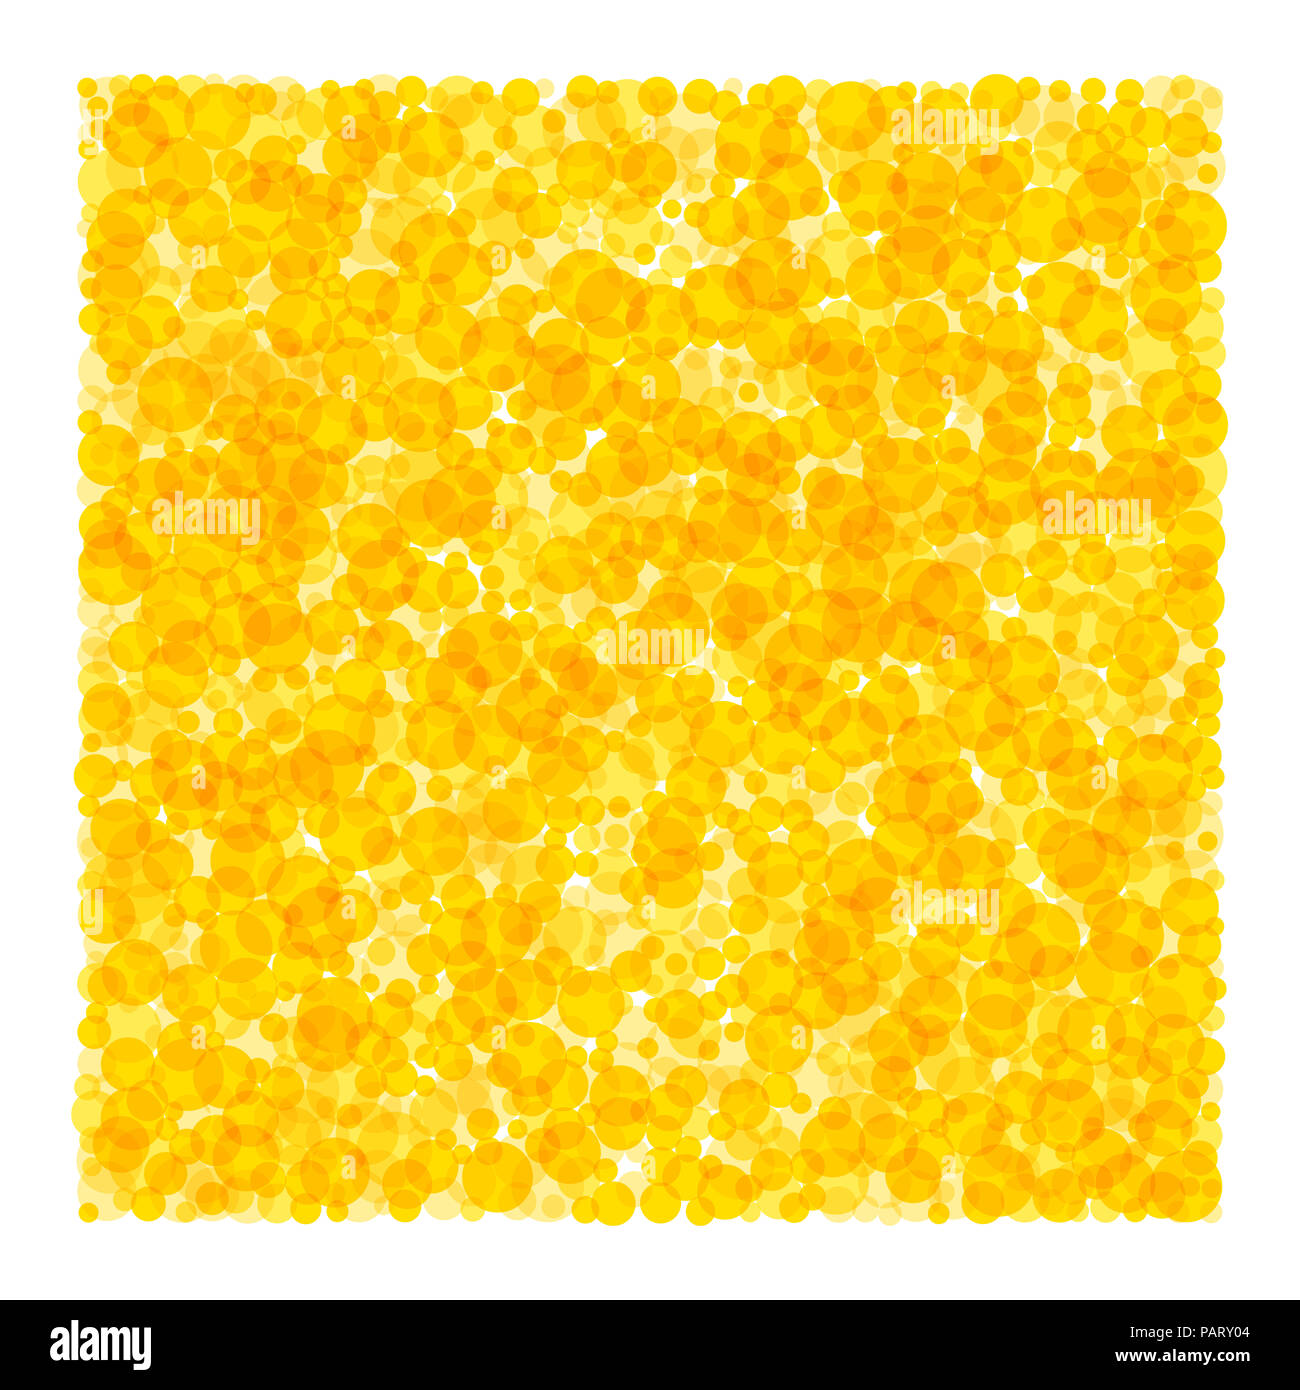 Platz aus Punkten. Viele gelbe und orange durchscheinende Flecken bilden einen hellen rechteckigen Bereich. Sonnigen Dekor. Abbildung. Stockfoto